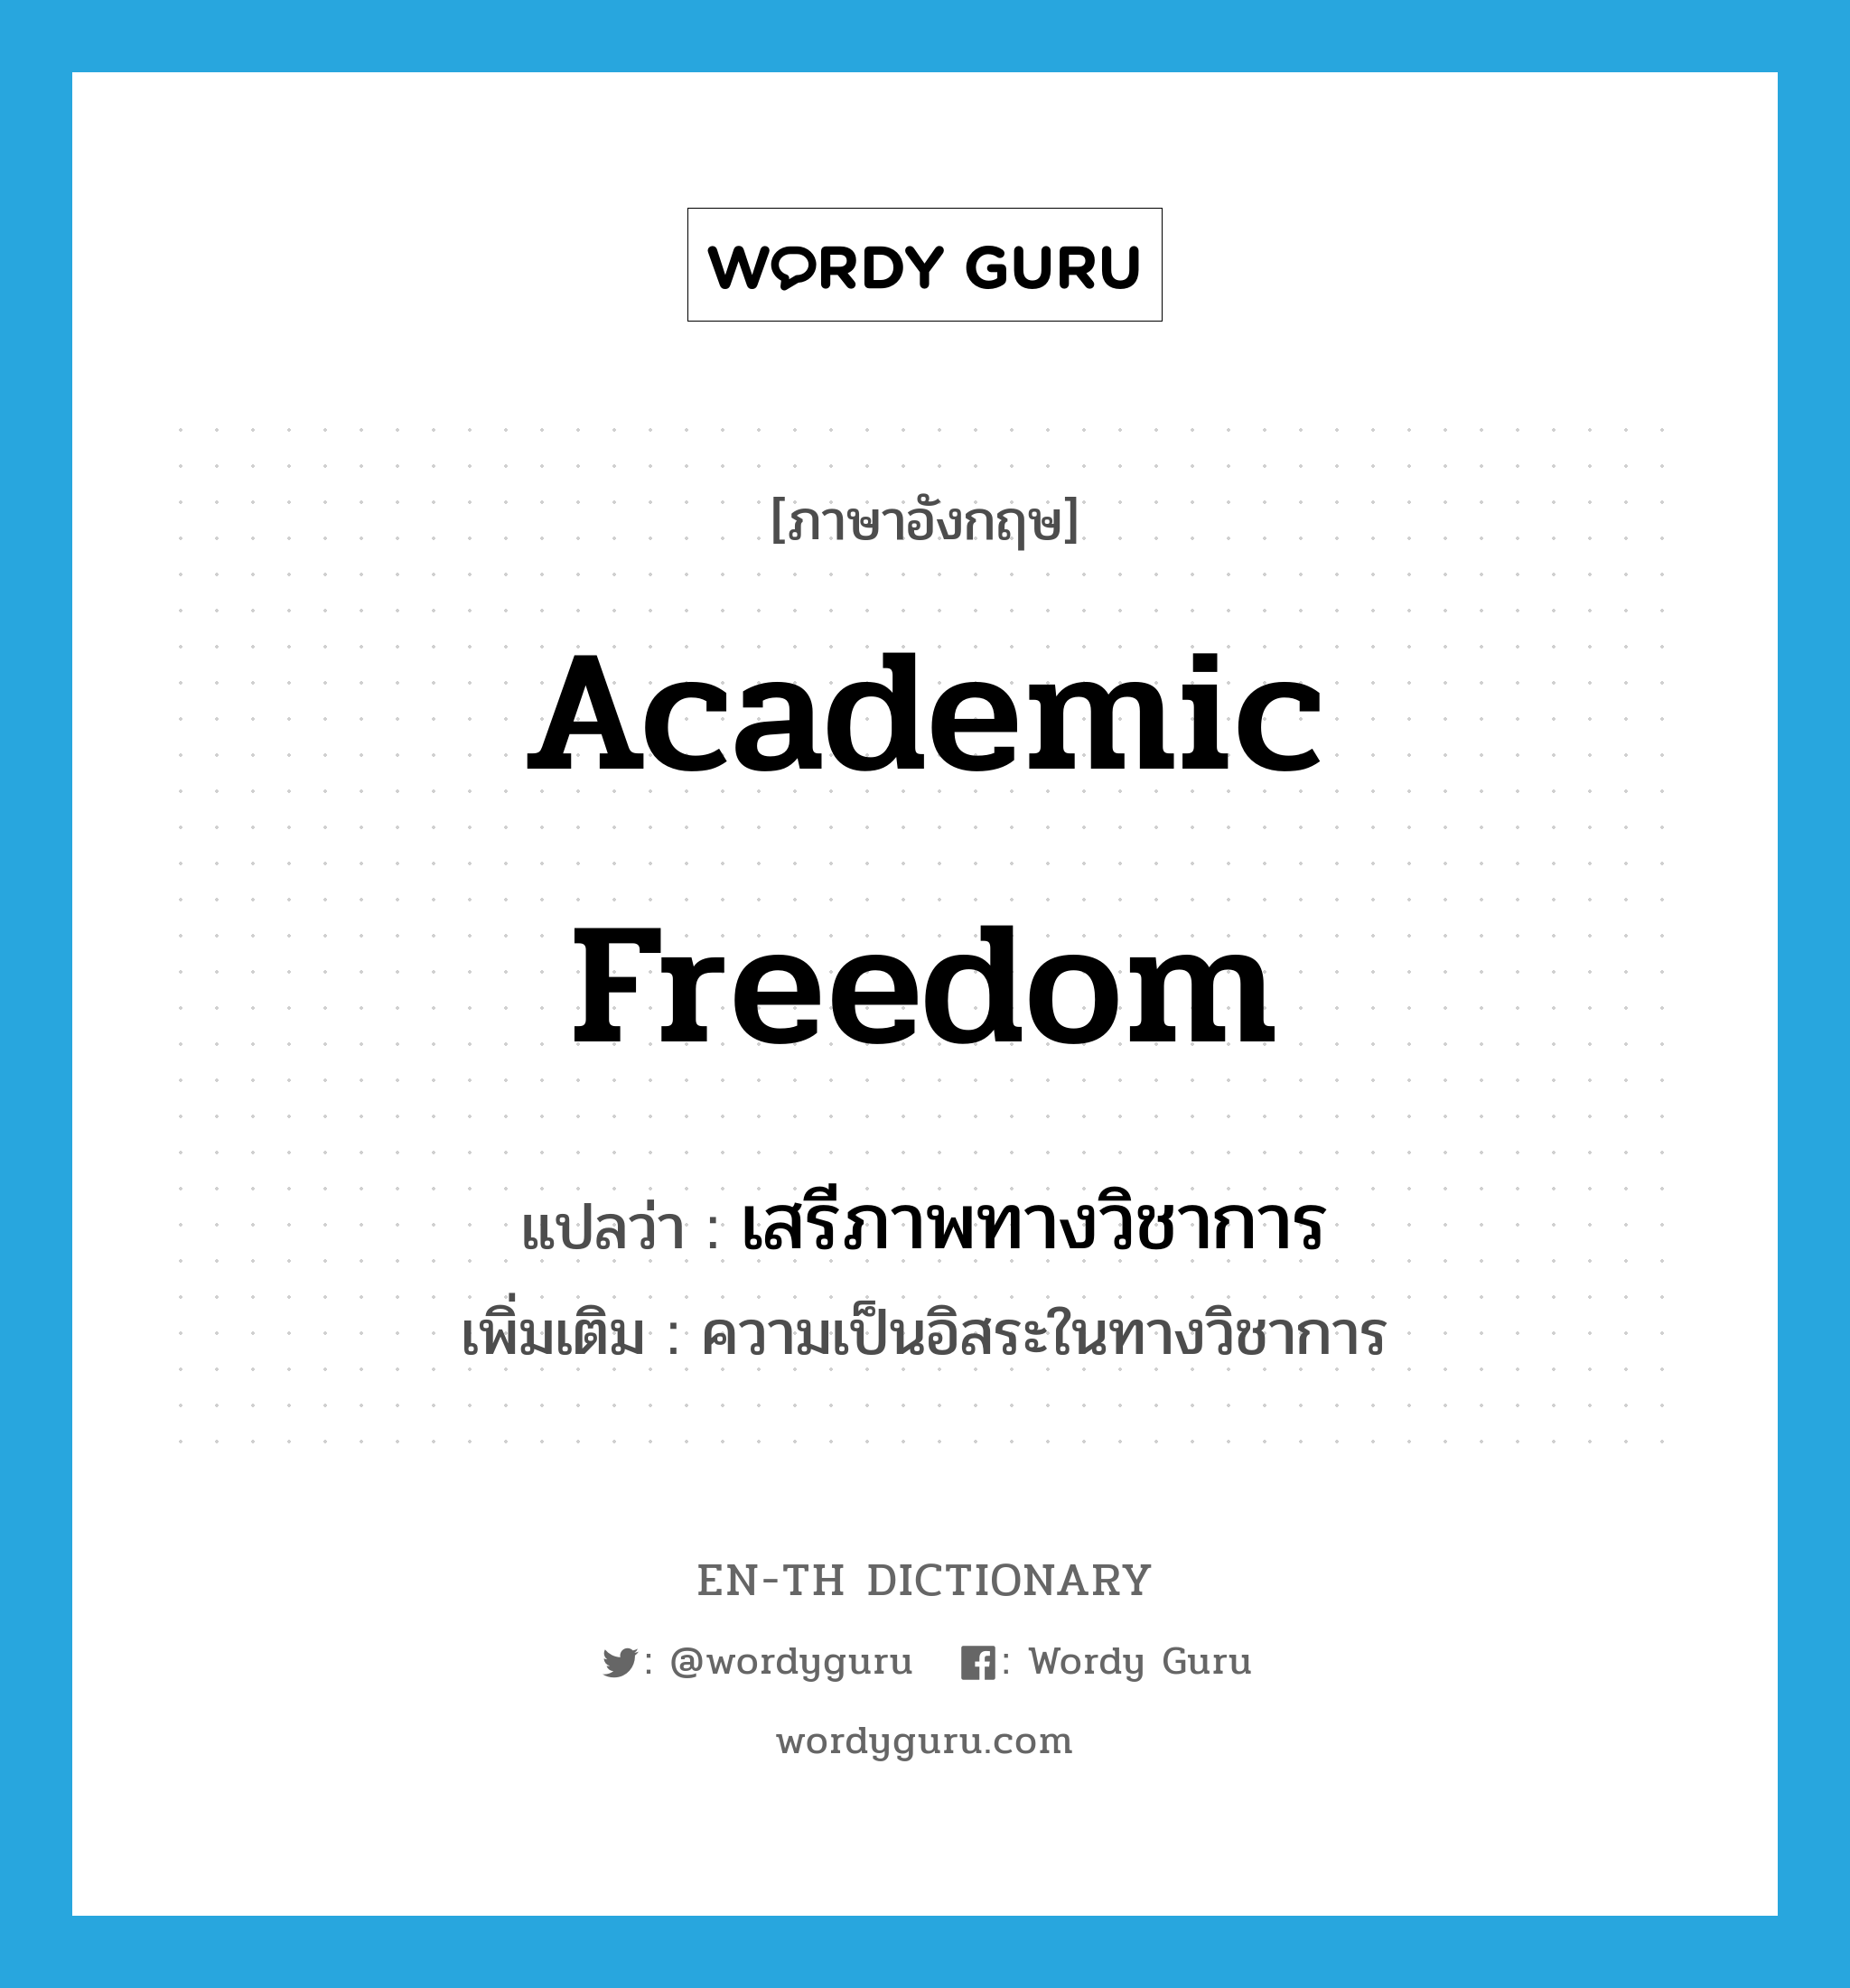 เสรีภาพทางวิชาการ ภาษาอังกฤษ?, คำศัพท์ภาษาอังกฤษ เสรีภาพทางวิชาการ แปลว่า academic freedom ประเภท N เพิ่มเติม ความเป็นอิสระในทางวิชาการ หมวด N